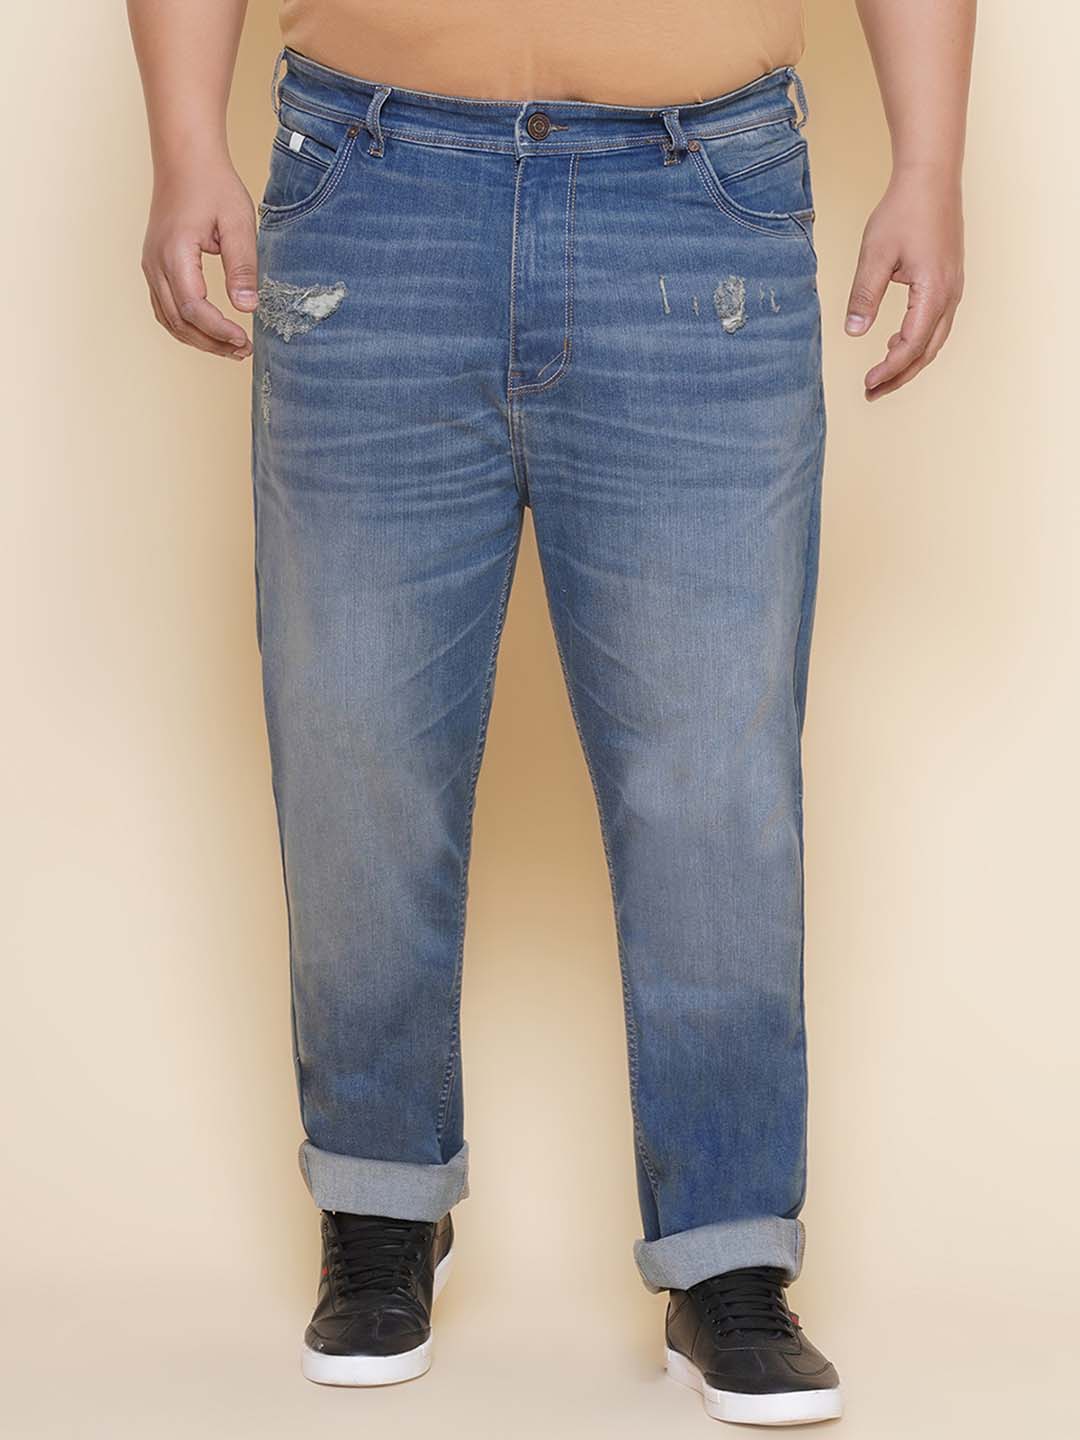 bottomwear/jeans/EJPJ25137/ejpj25137-1.jpg